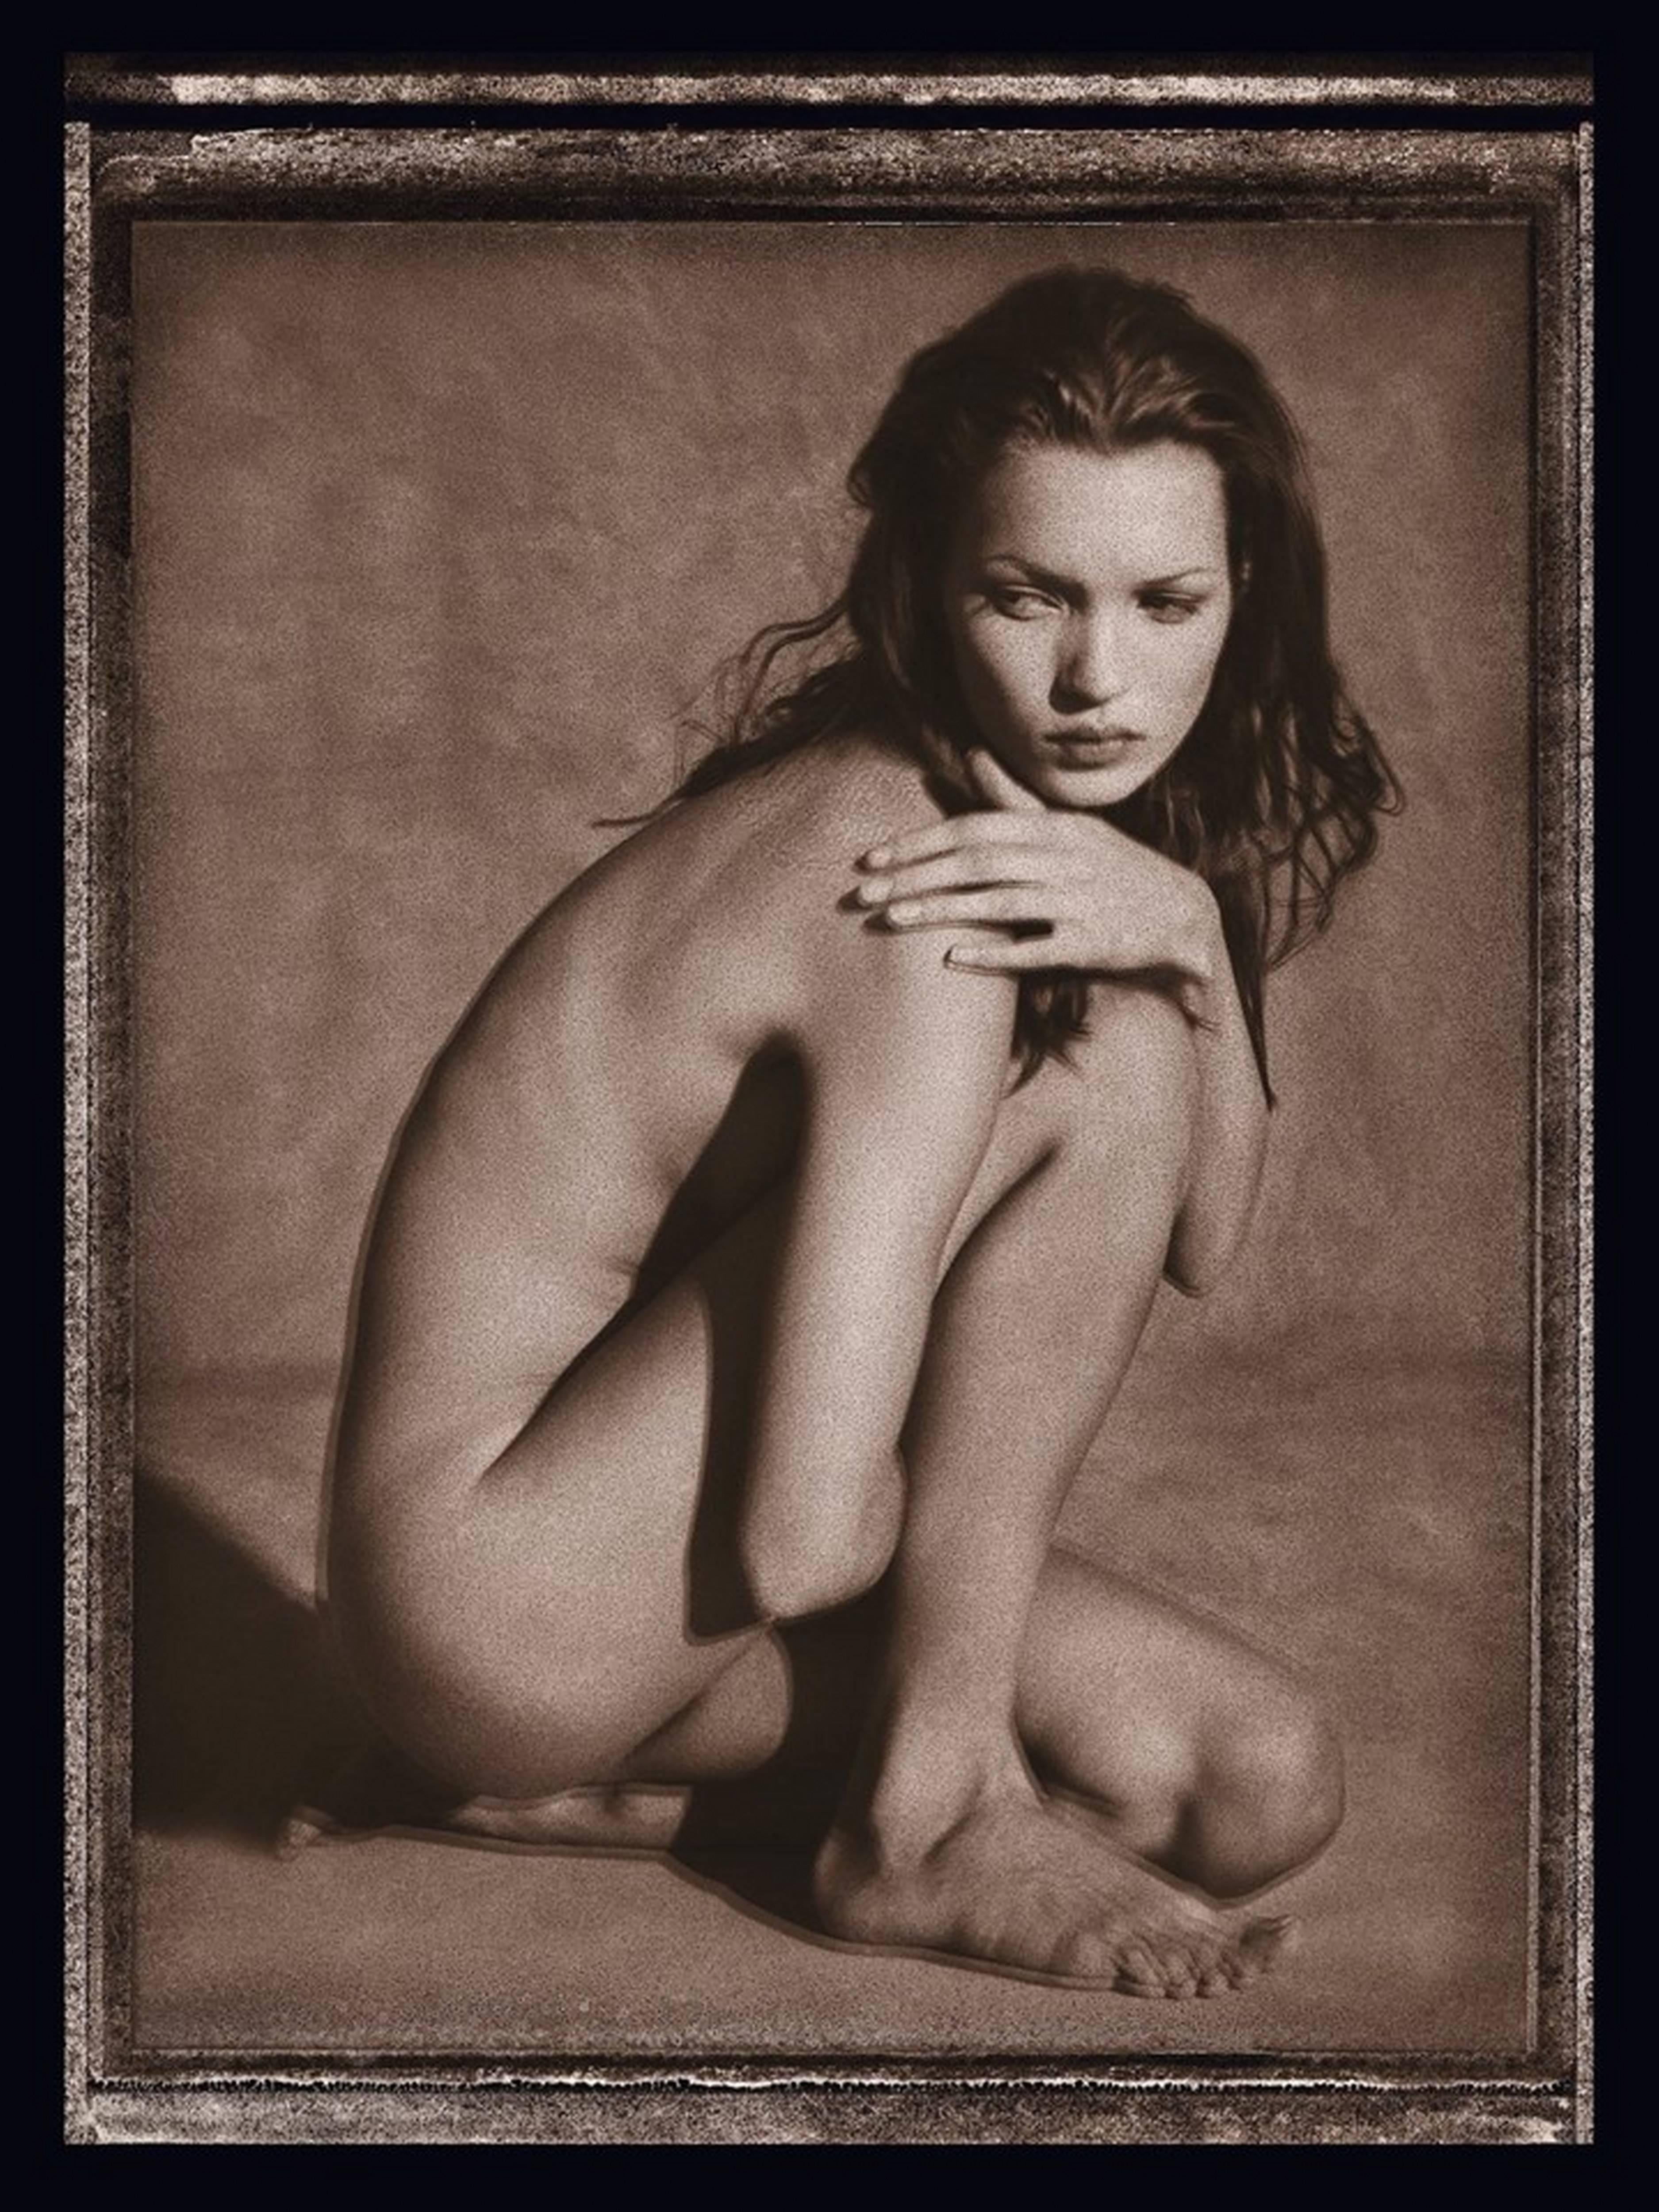 Spezieller Kate Moss Druck aus der 'ROIDS Serie - letzter verfügbarer Artist Print (aus dem persönlichen Archiv der Künstlerin).

Getönter Abzug von der Rückseite der Emulsion eines Original-Polaroids.

Albert Watson ist ein Veteran der